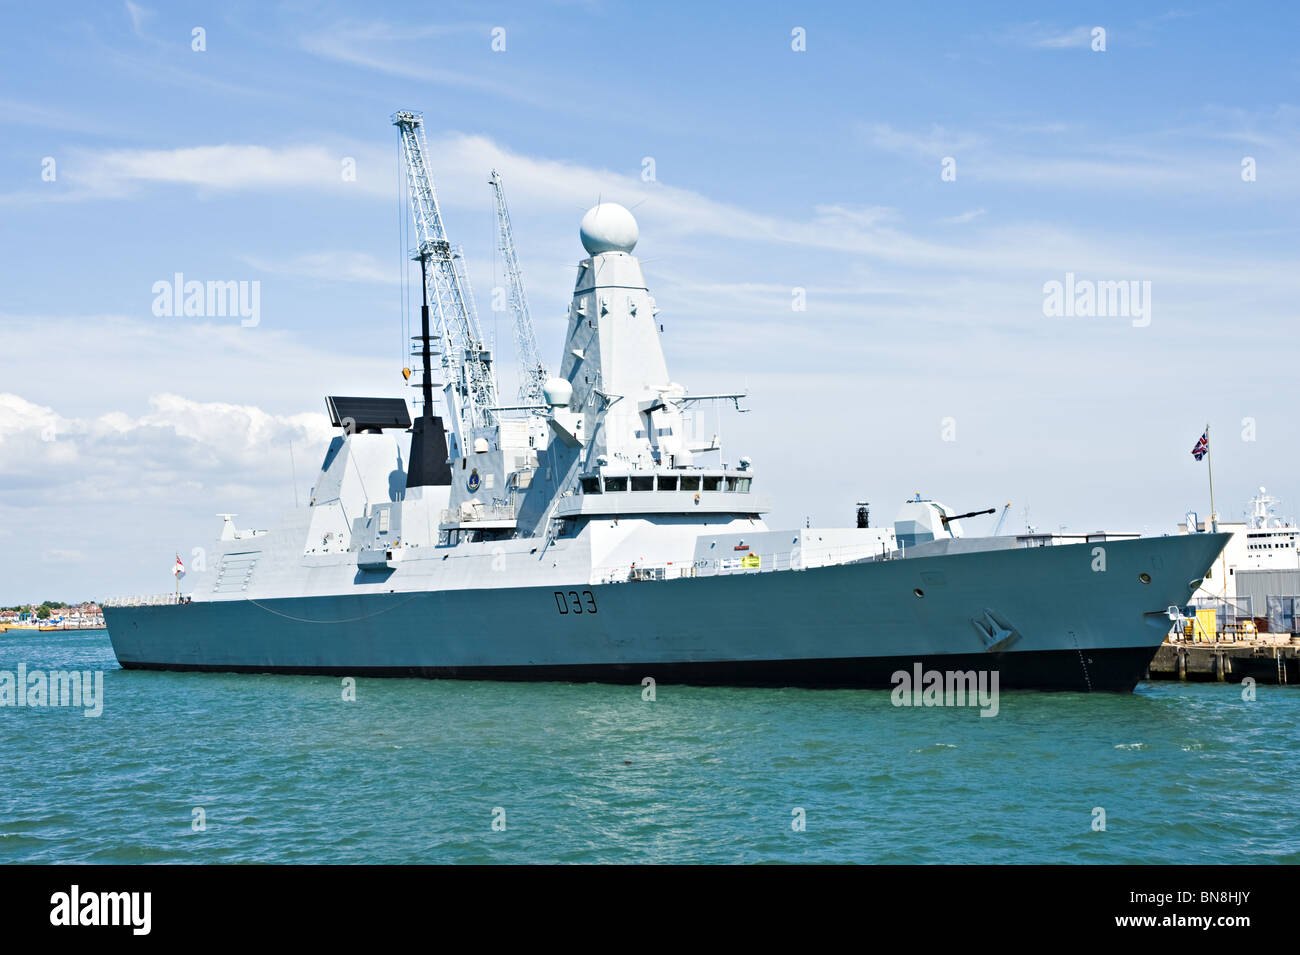 Type 45 de la Royal Navy Destroyer HMS Dauntless D33 à quai dans l'arsenal naval de Portsmouth Angleterre Royaume-Uni Banque D'Images